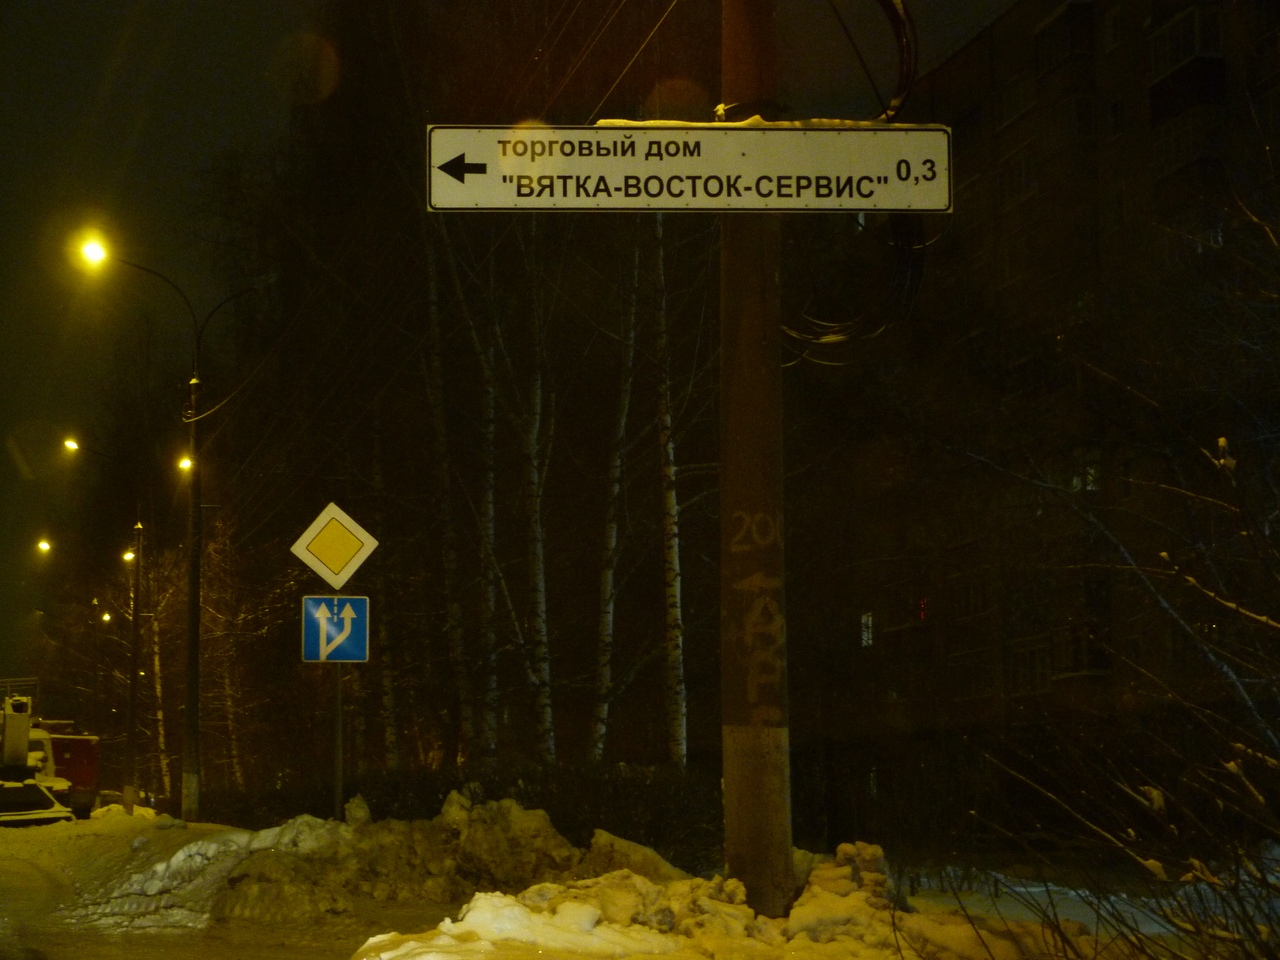 УФАС проведет проверку из-за рекламы в виде дорожных знаков в Кирове